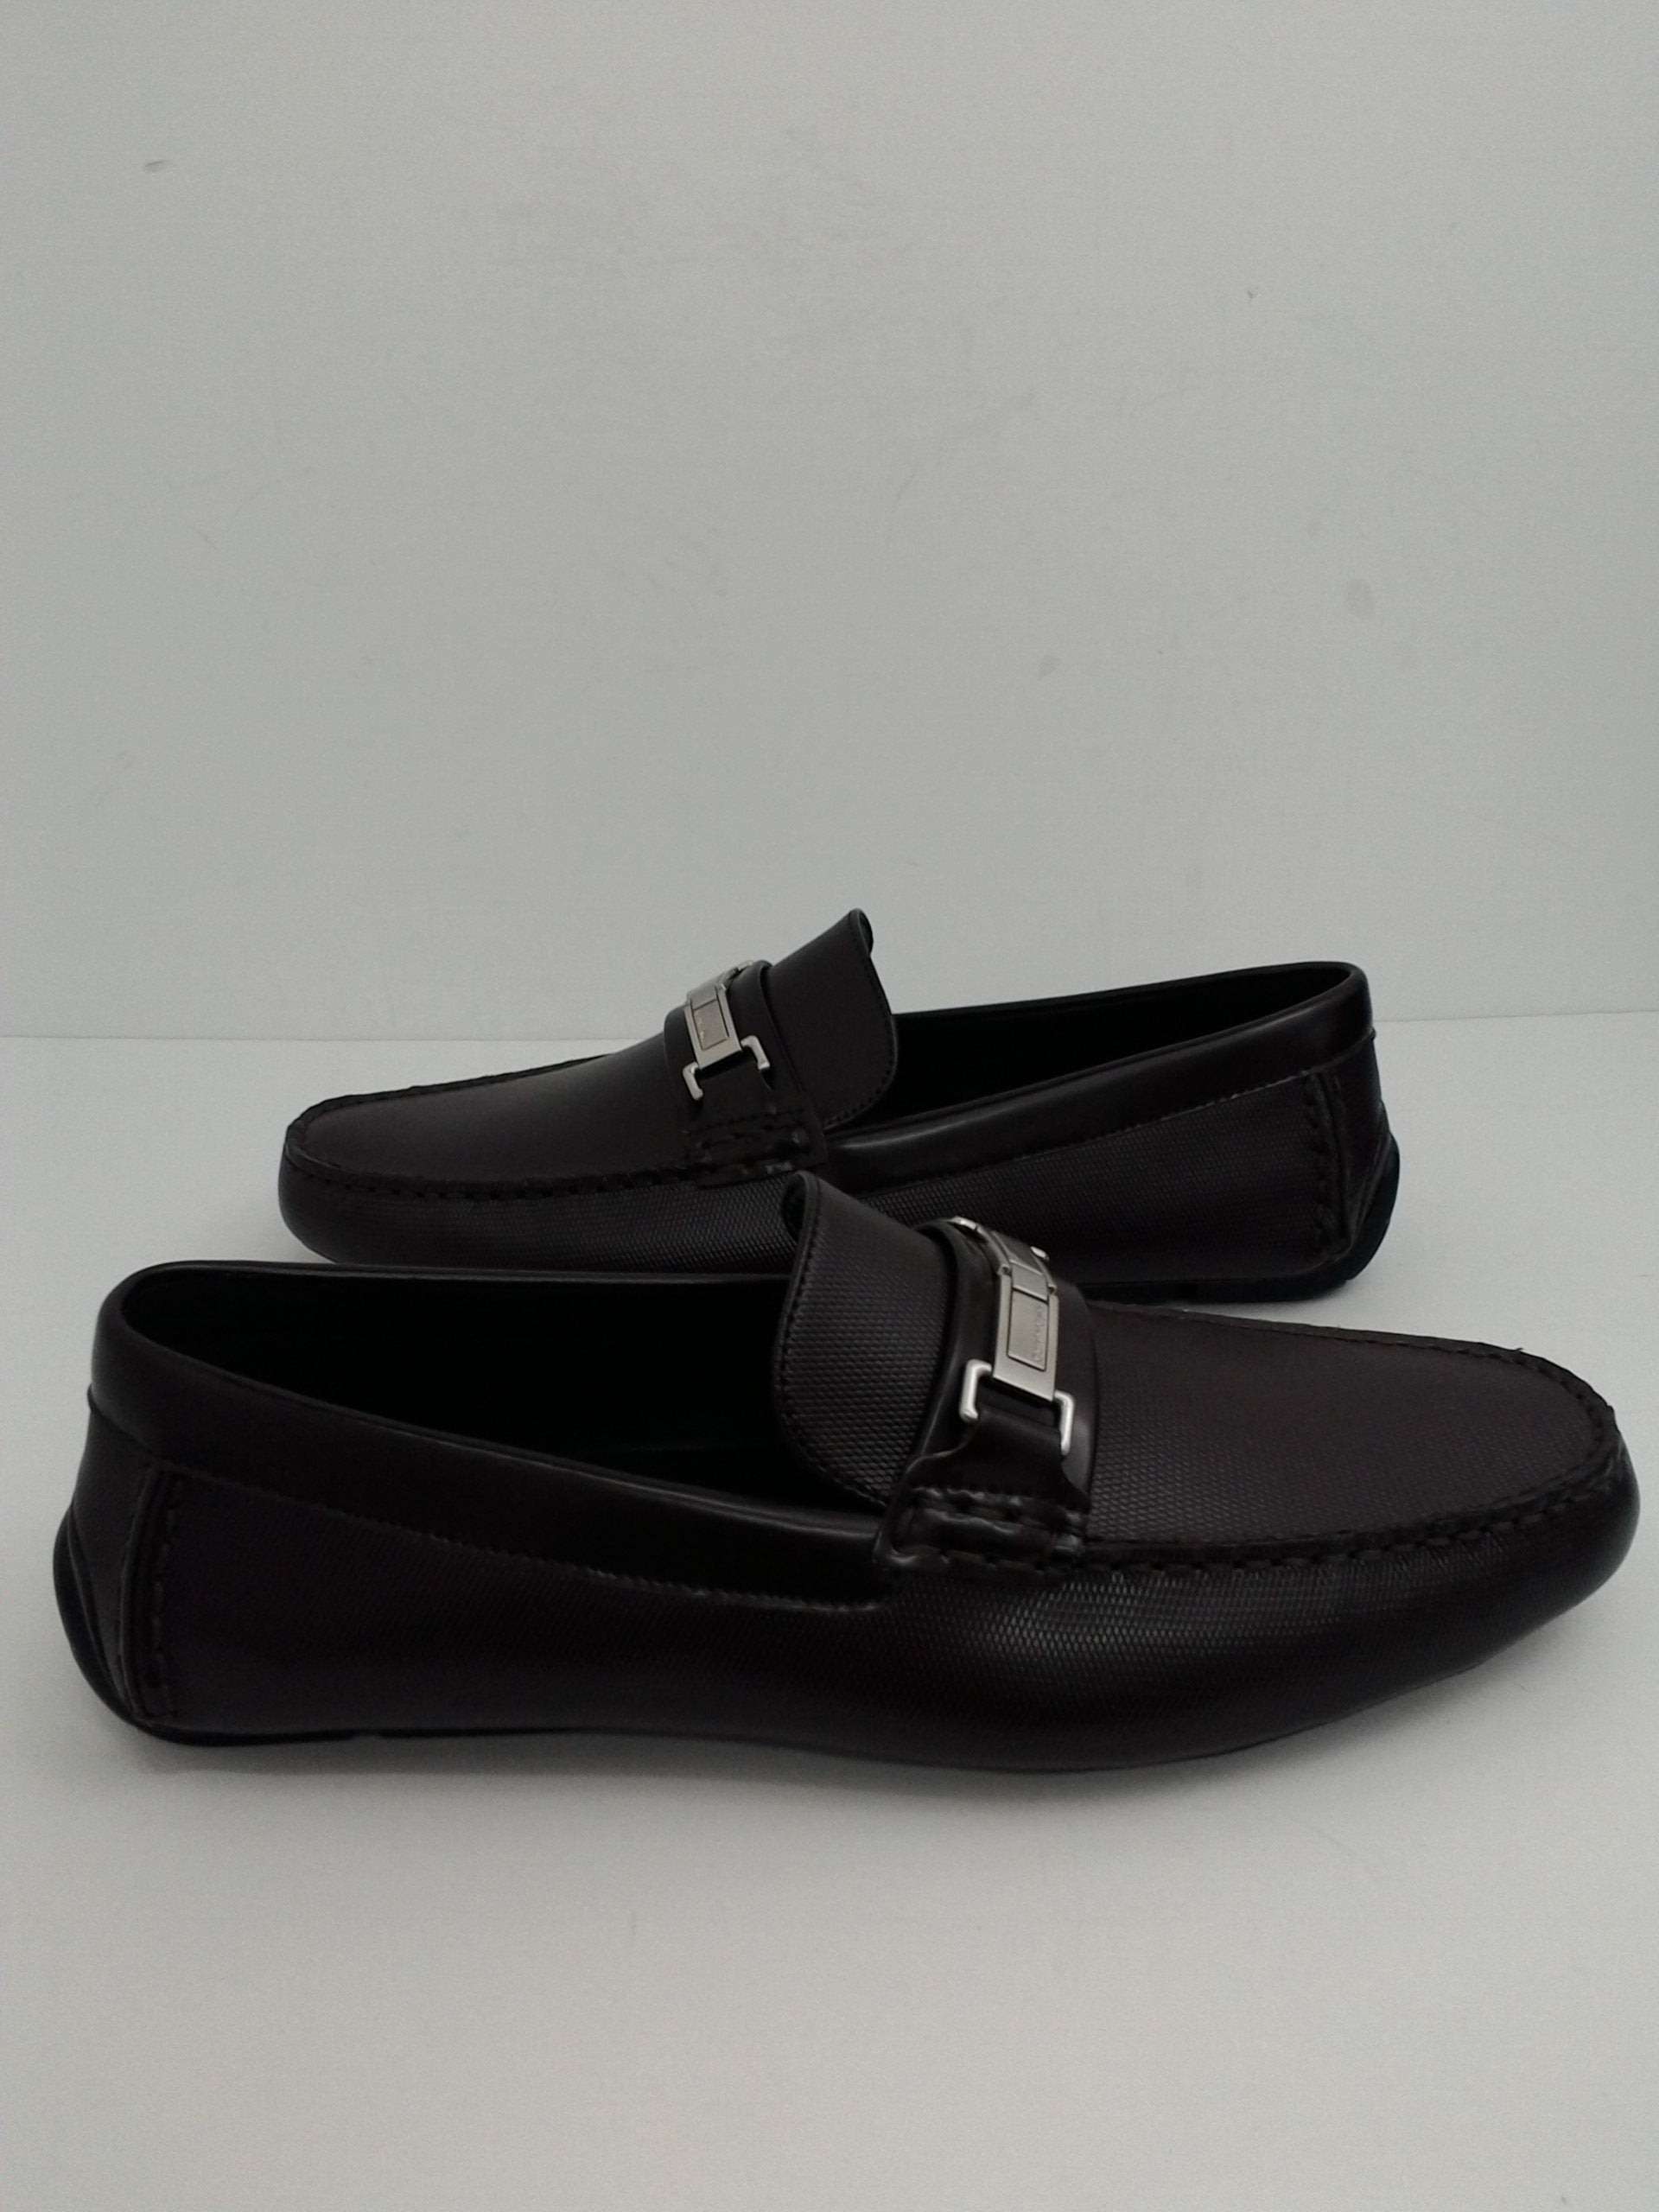 Calvin Klein Men's Karns Burgundy Leather Loafer Size 12 - Prime Shoes ...